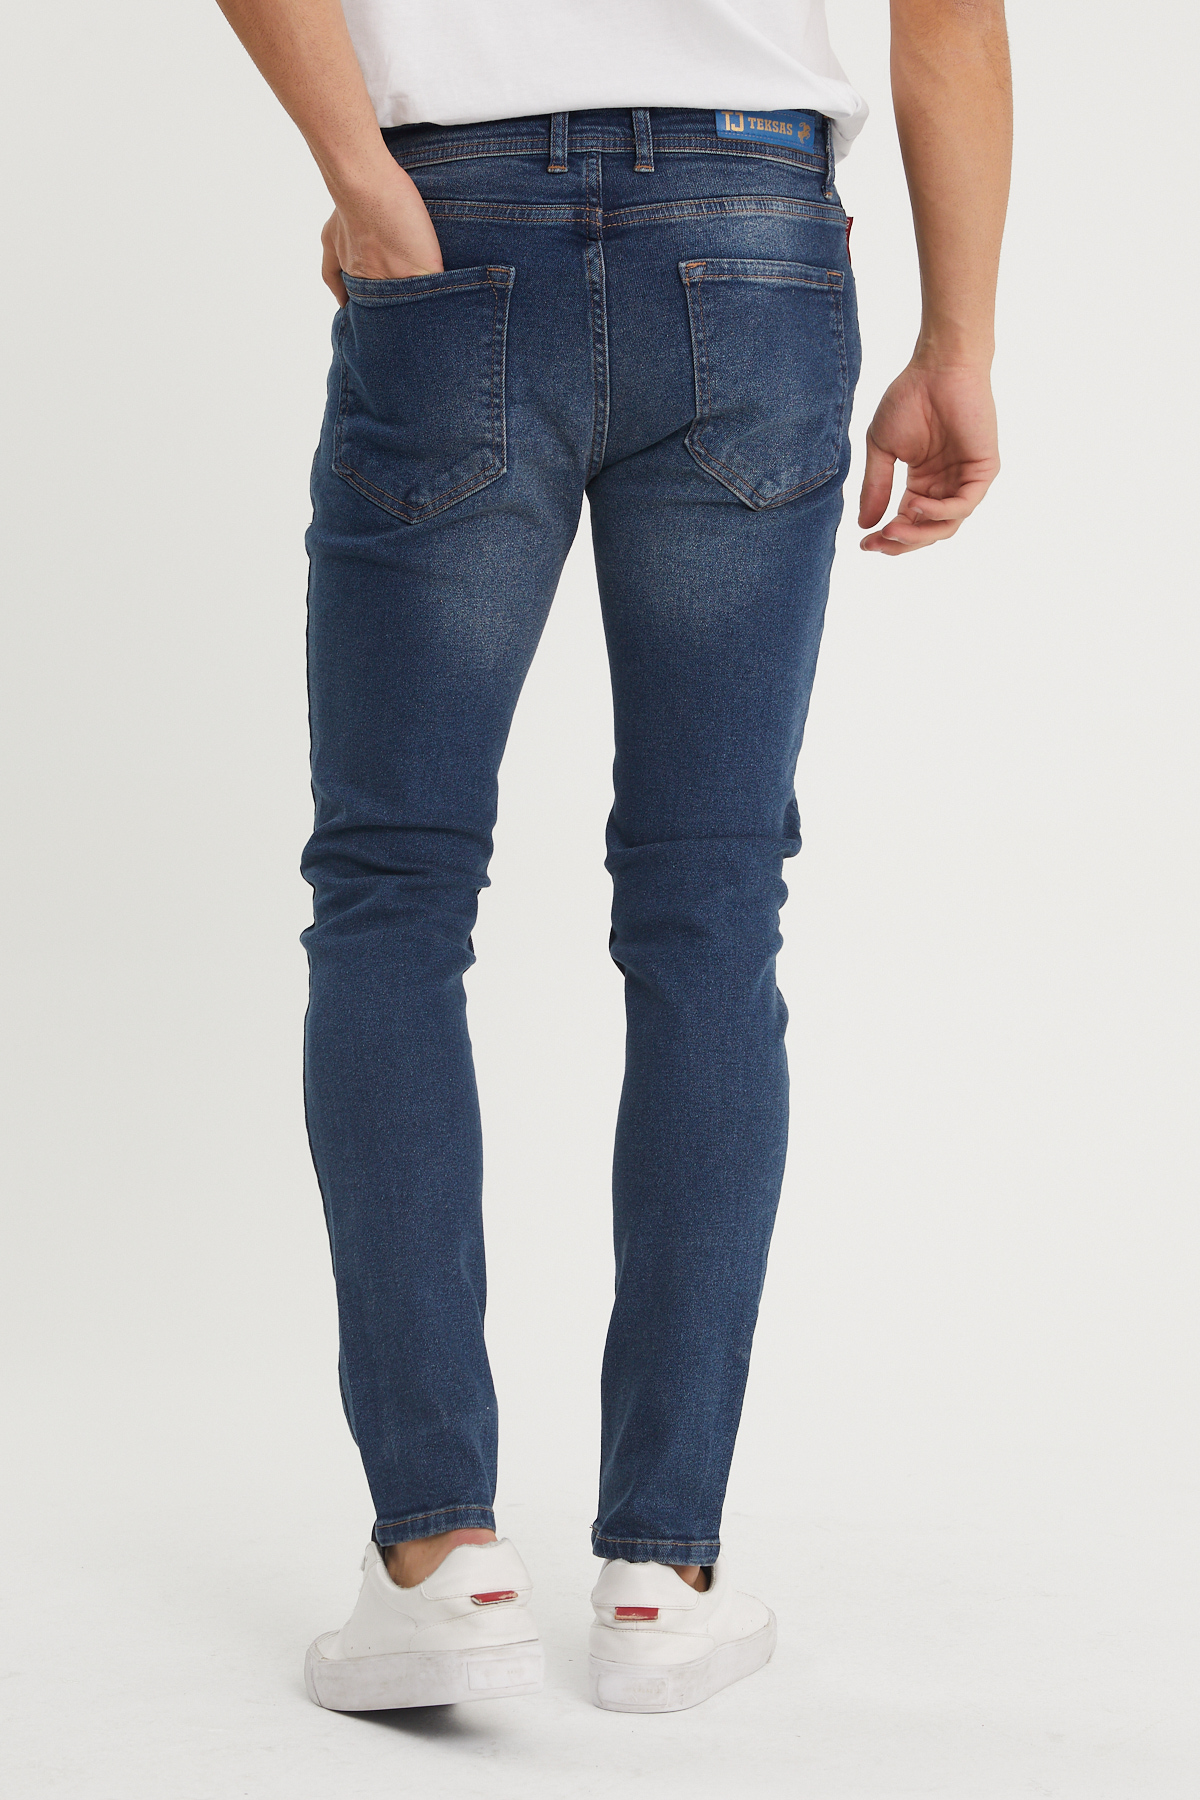 Yıkamalı Lacivert Slim Fit Jean Pantolon 1KXE5-44352-48 - 3